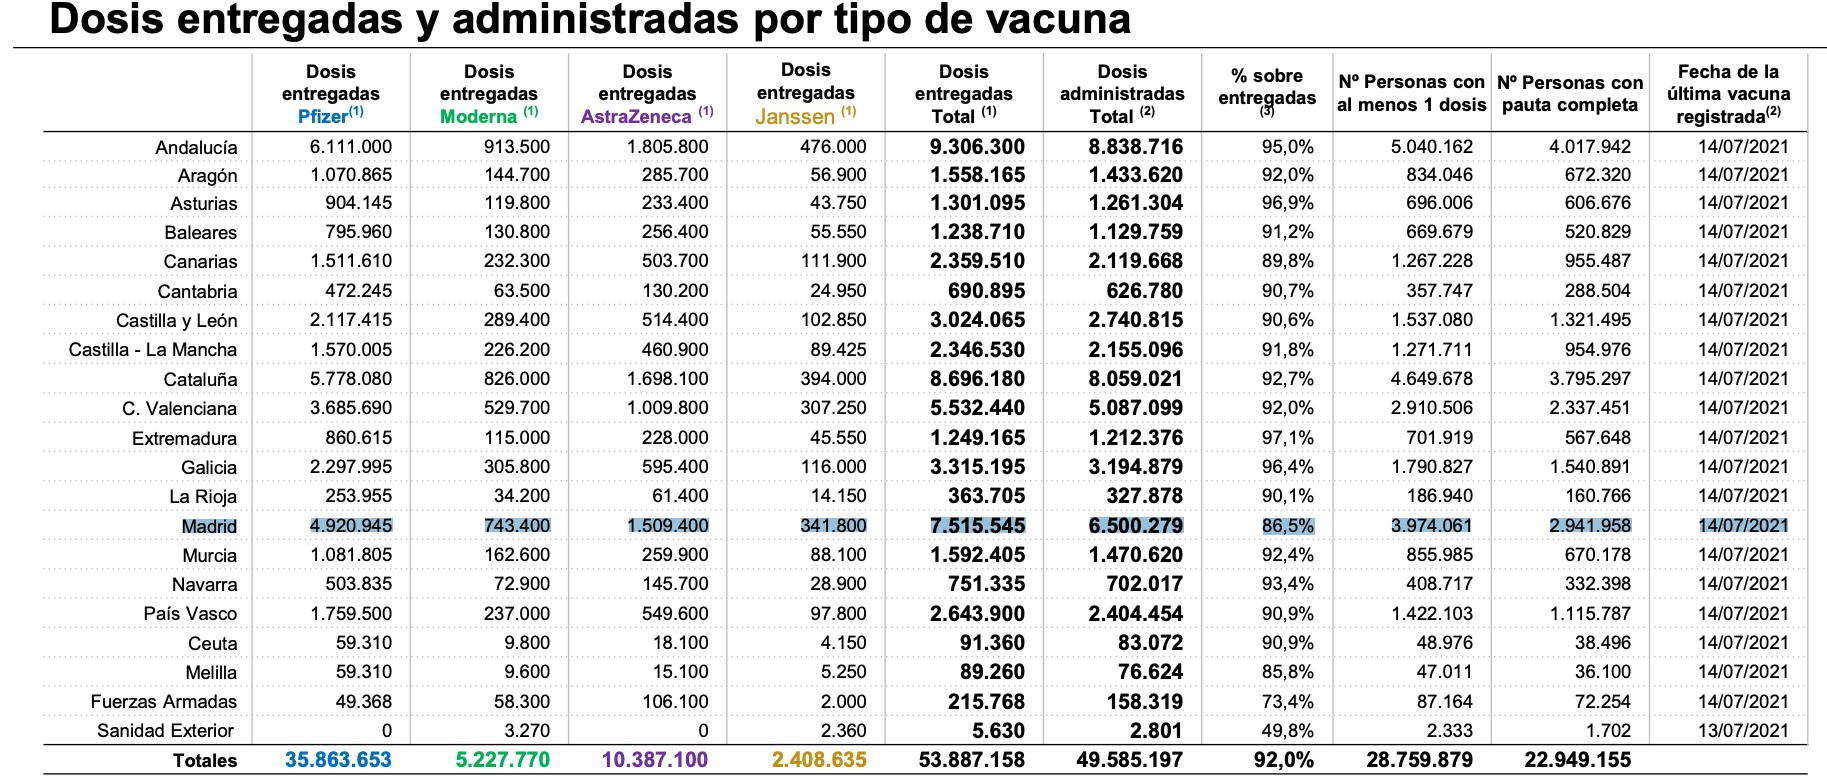 Madrid, la autonomía que menos vacuna de España. Ministerio de Sanidad